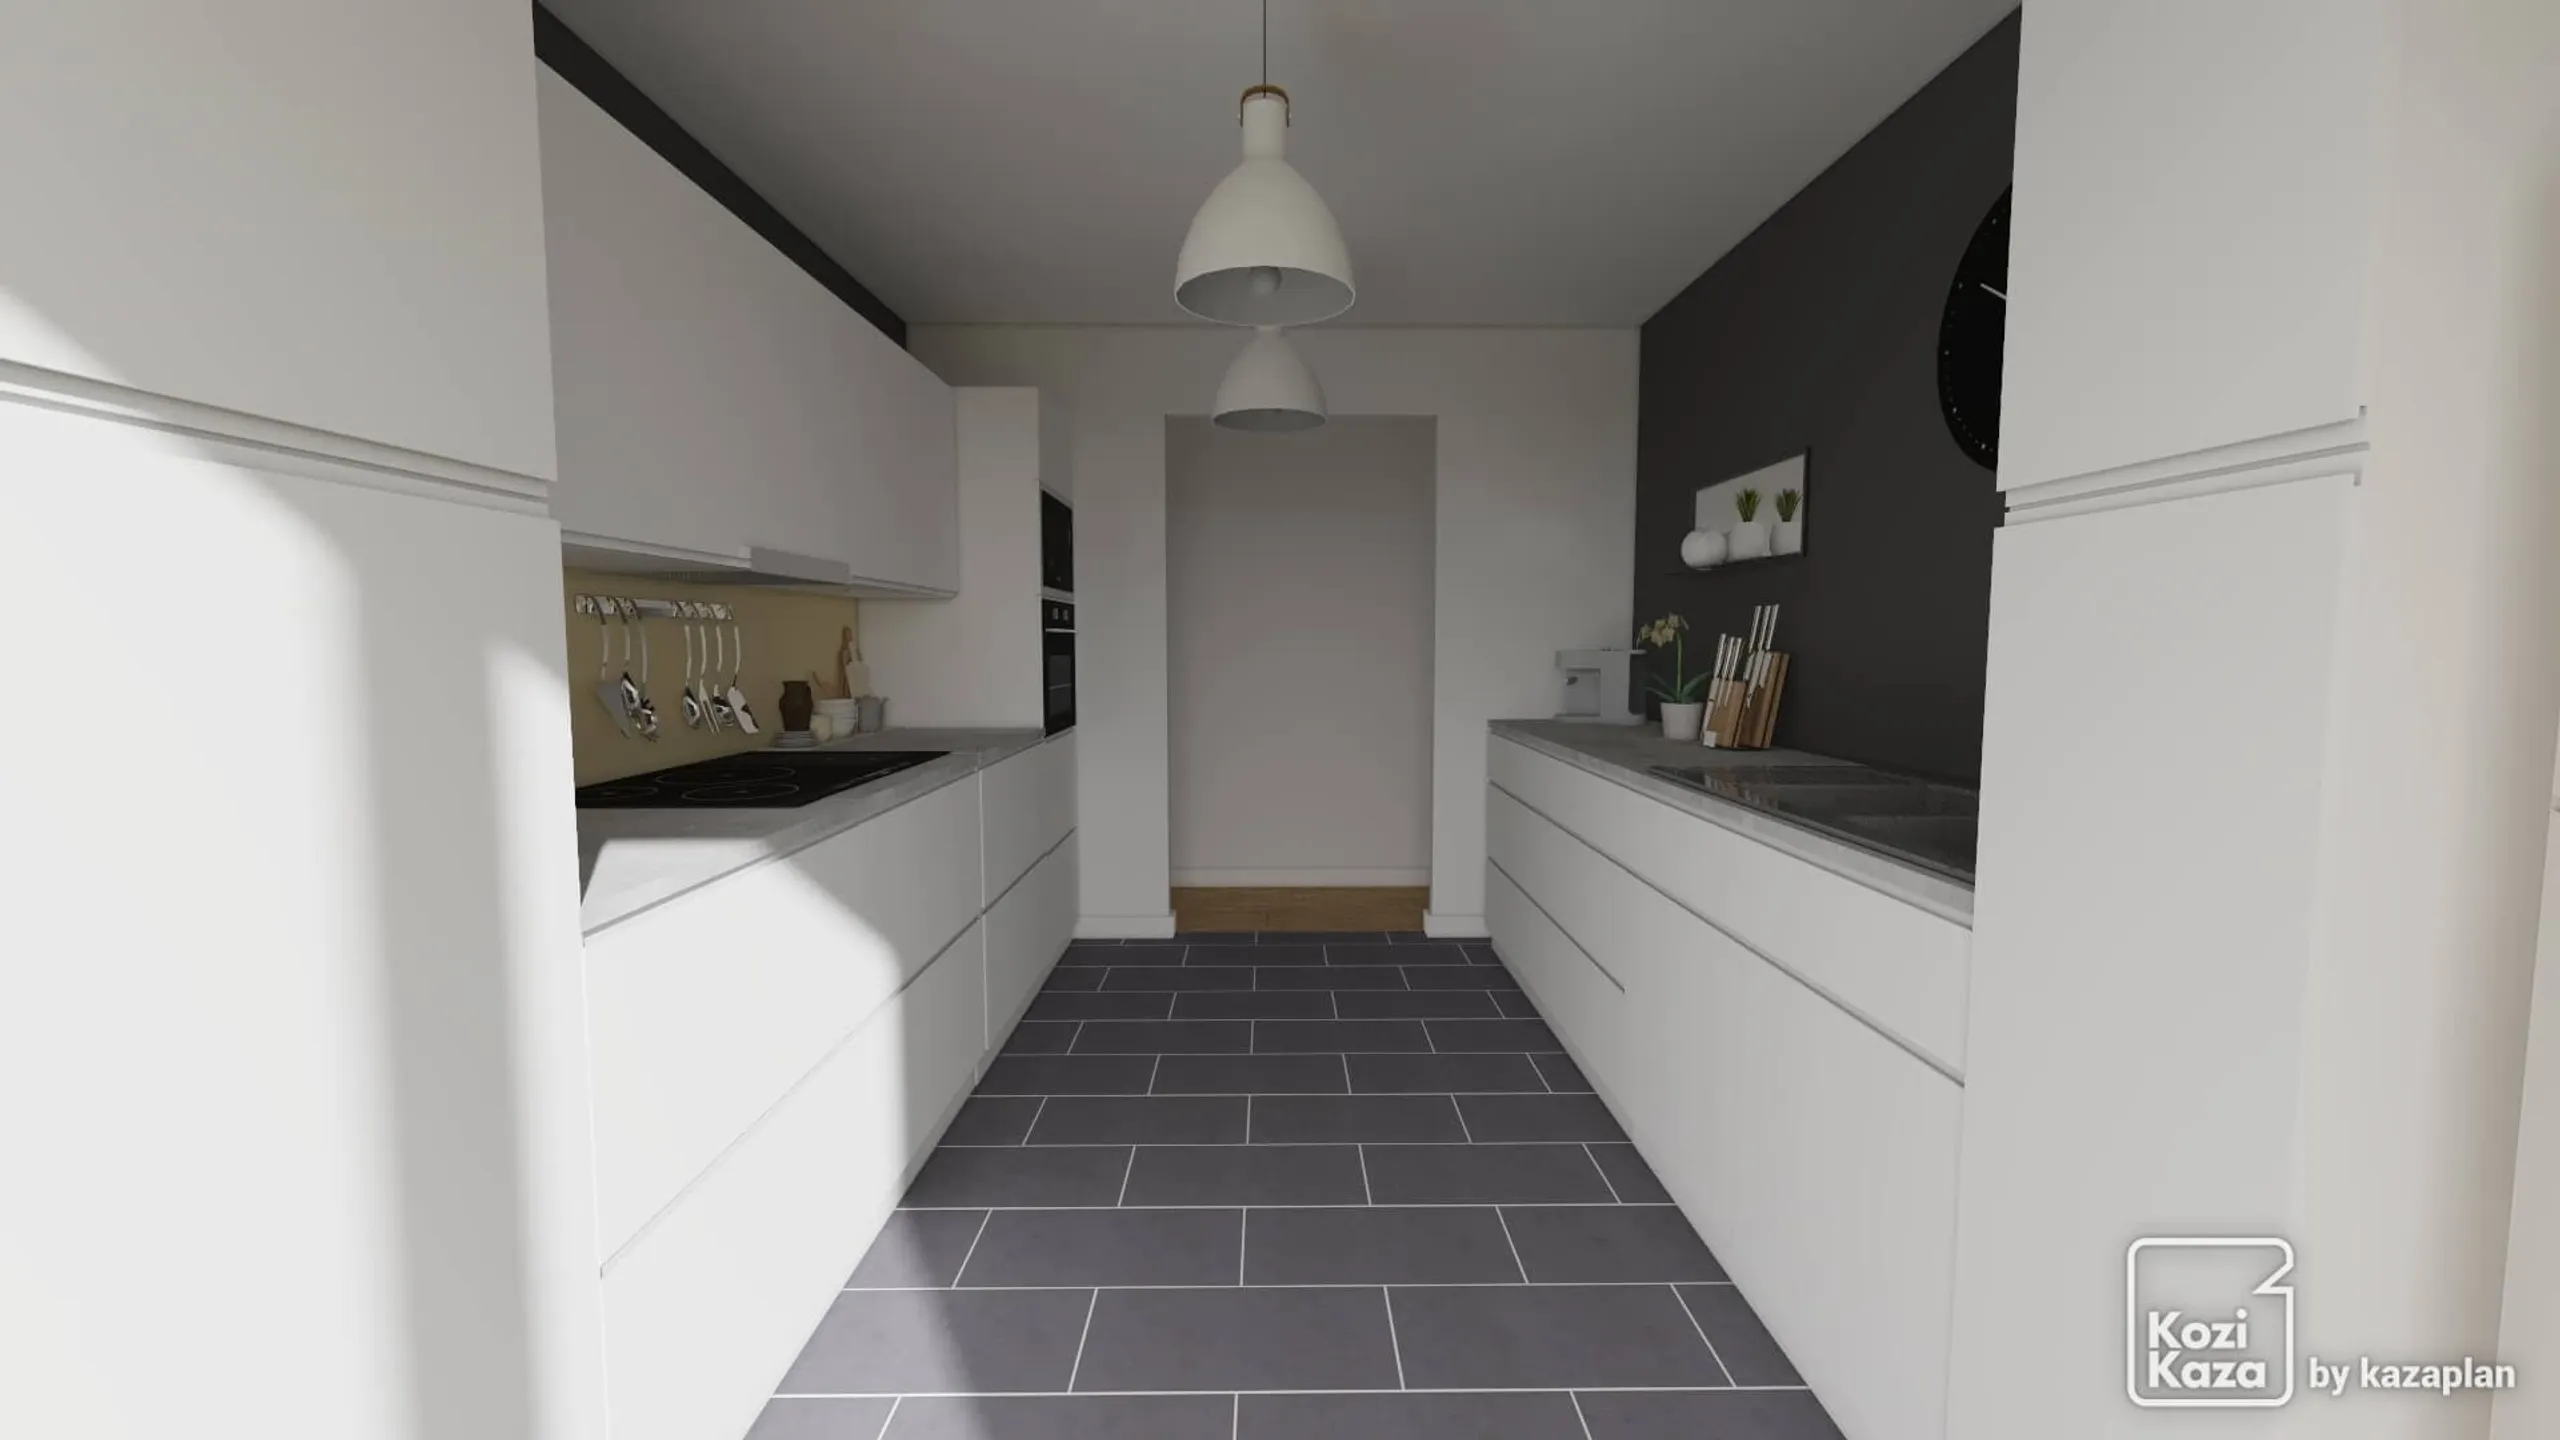 Idea of parallel design kitchen 3D 3